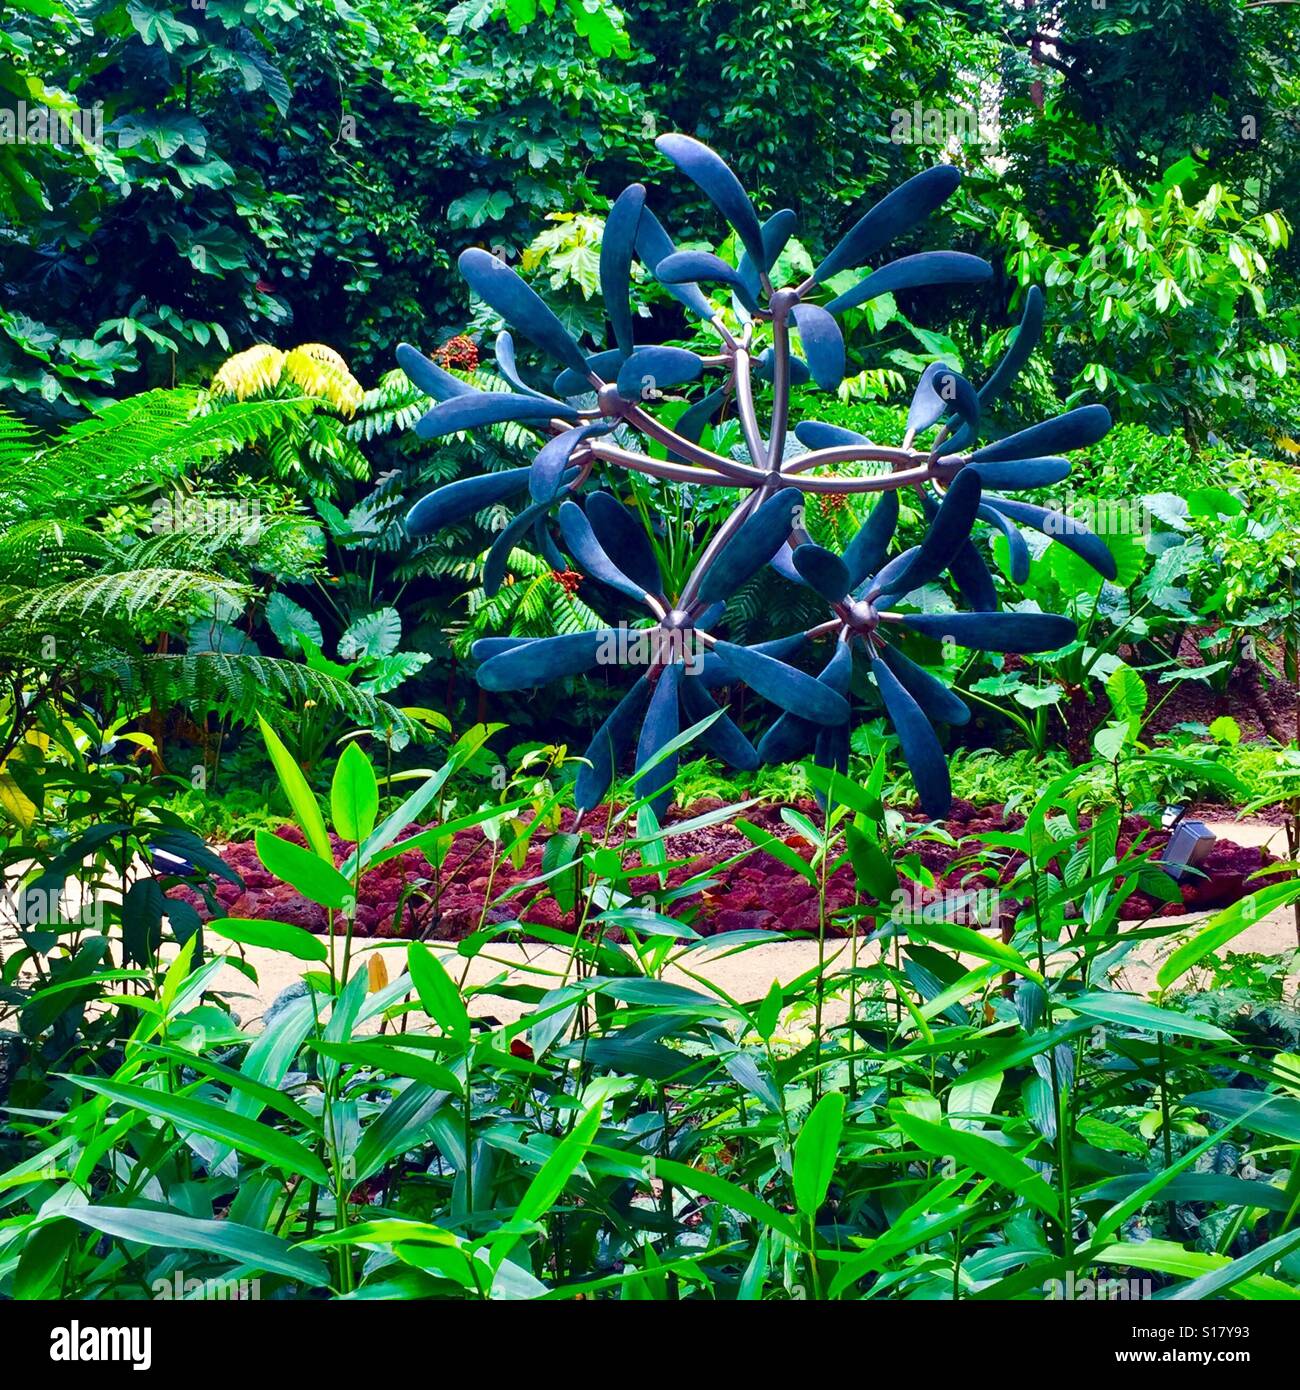 59 alas, una escultura de flores por James Surls en la celebración de los 50 años de independencia de Singapur en los jardines botánicos de Singapur, un sitio del Patrimonio Mundial de la UNESCO Foto de stock